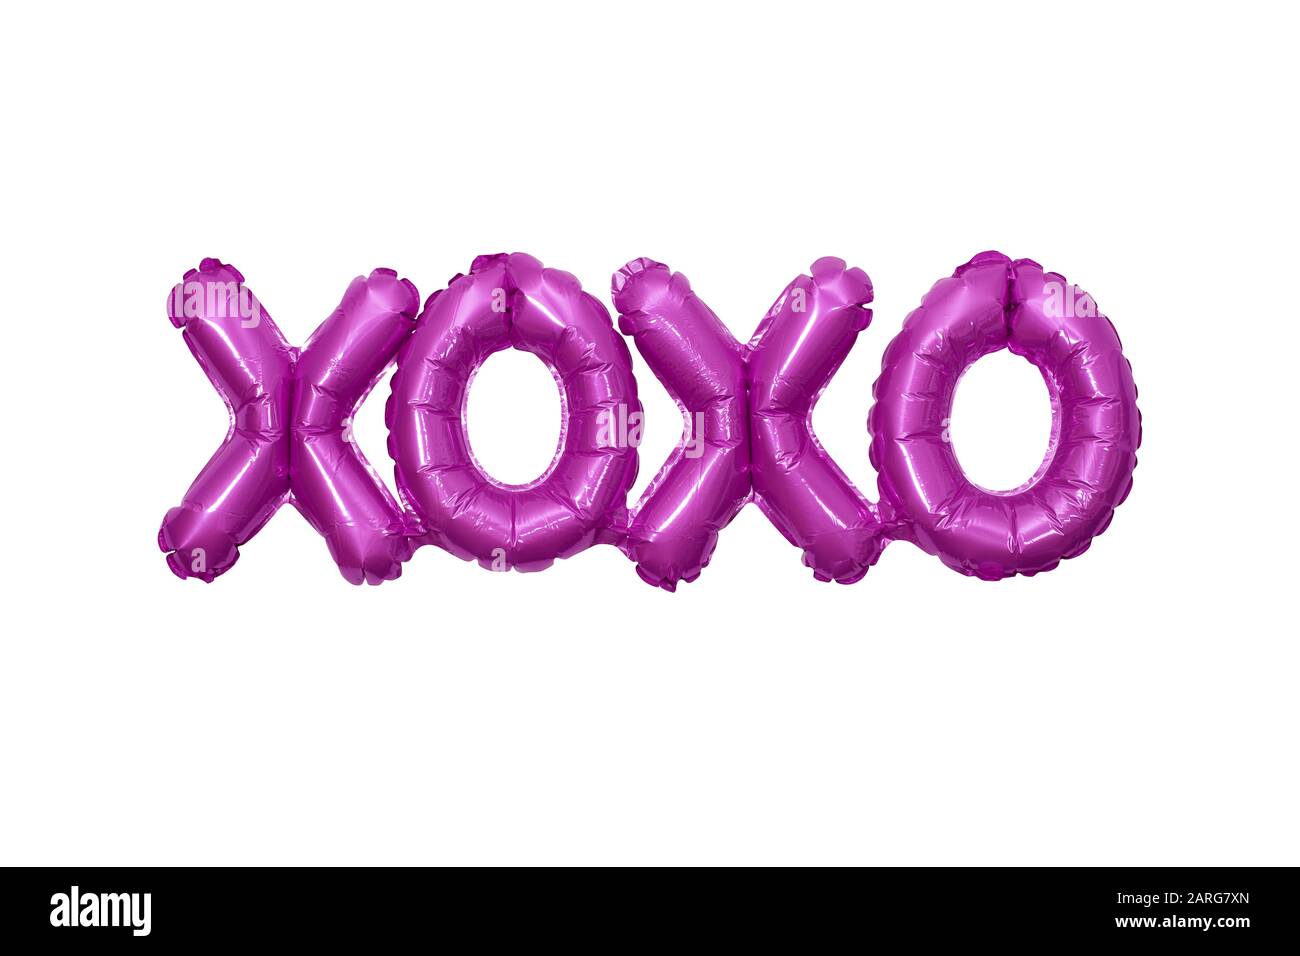 Ballonnet gonflé formant les lettres XOXO signifiant hugs et baisses Banque D'Images